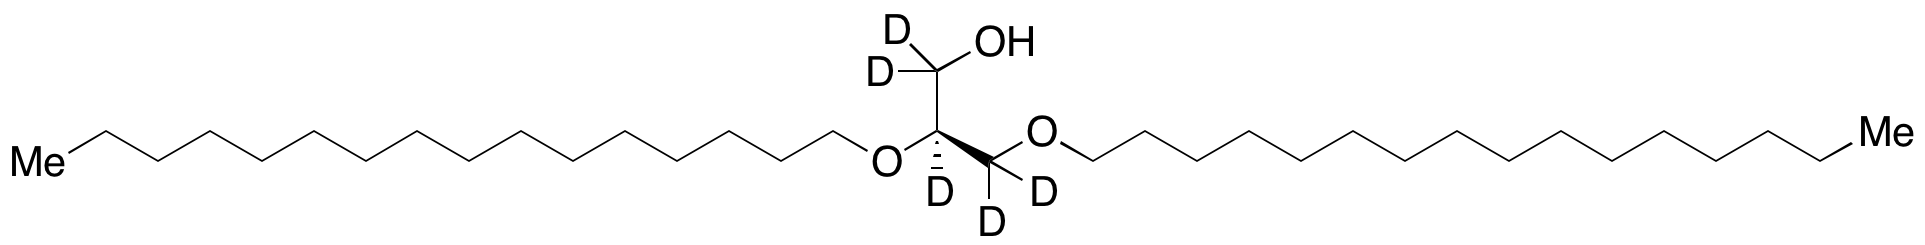 1,2-O-Dihexadecyl-sn-glycerol-d5